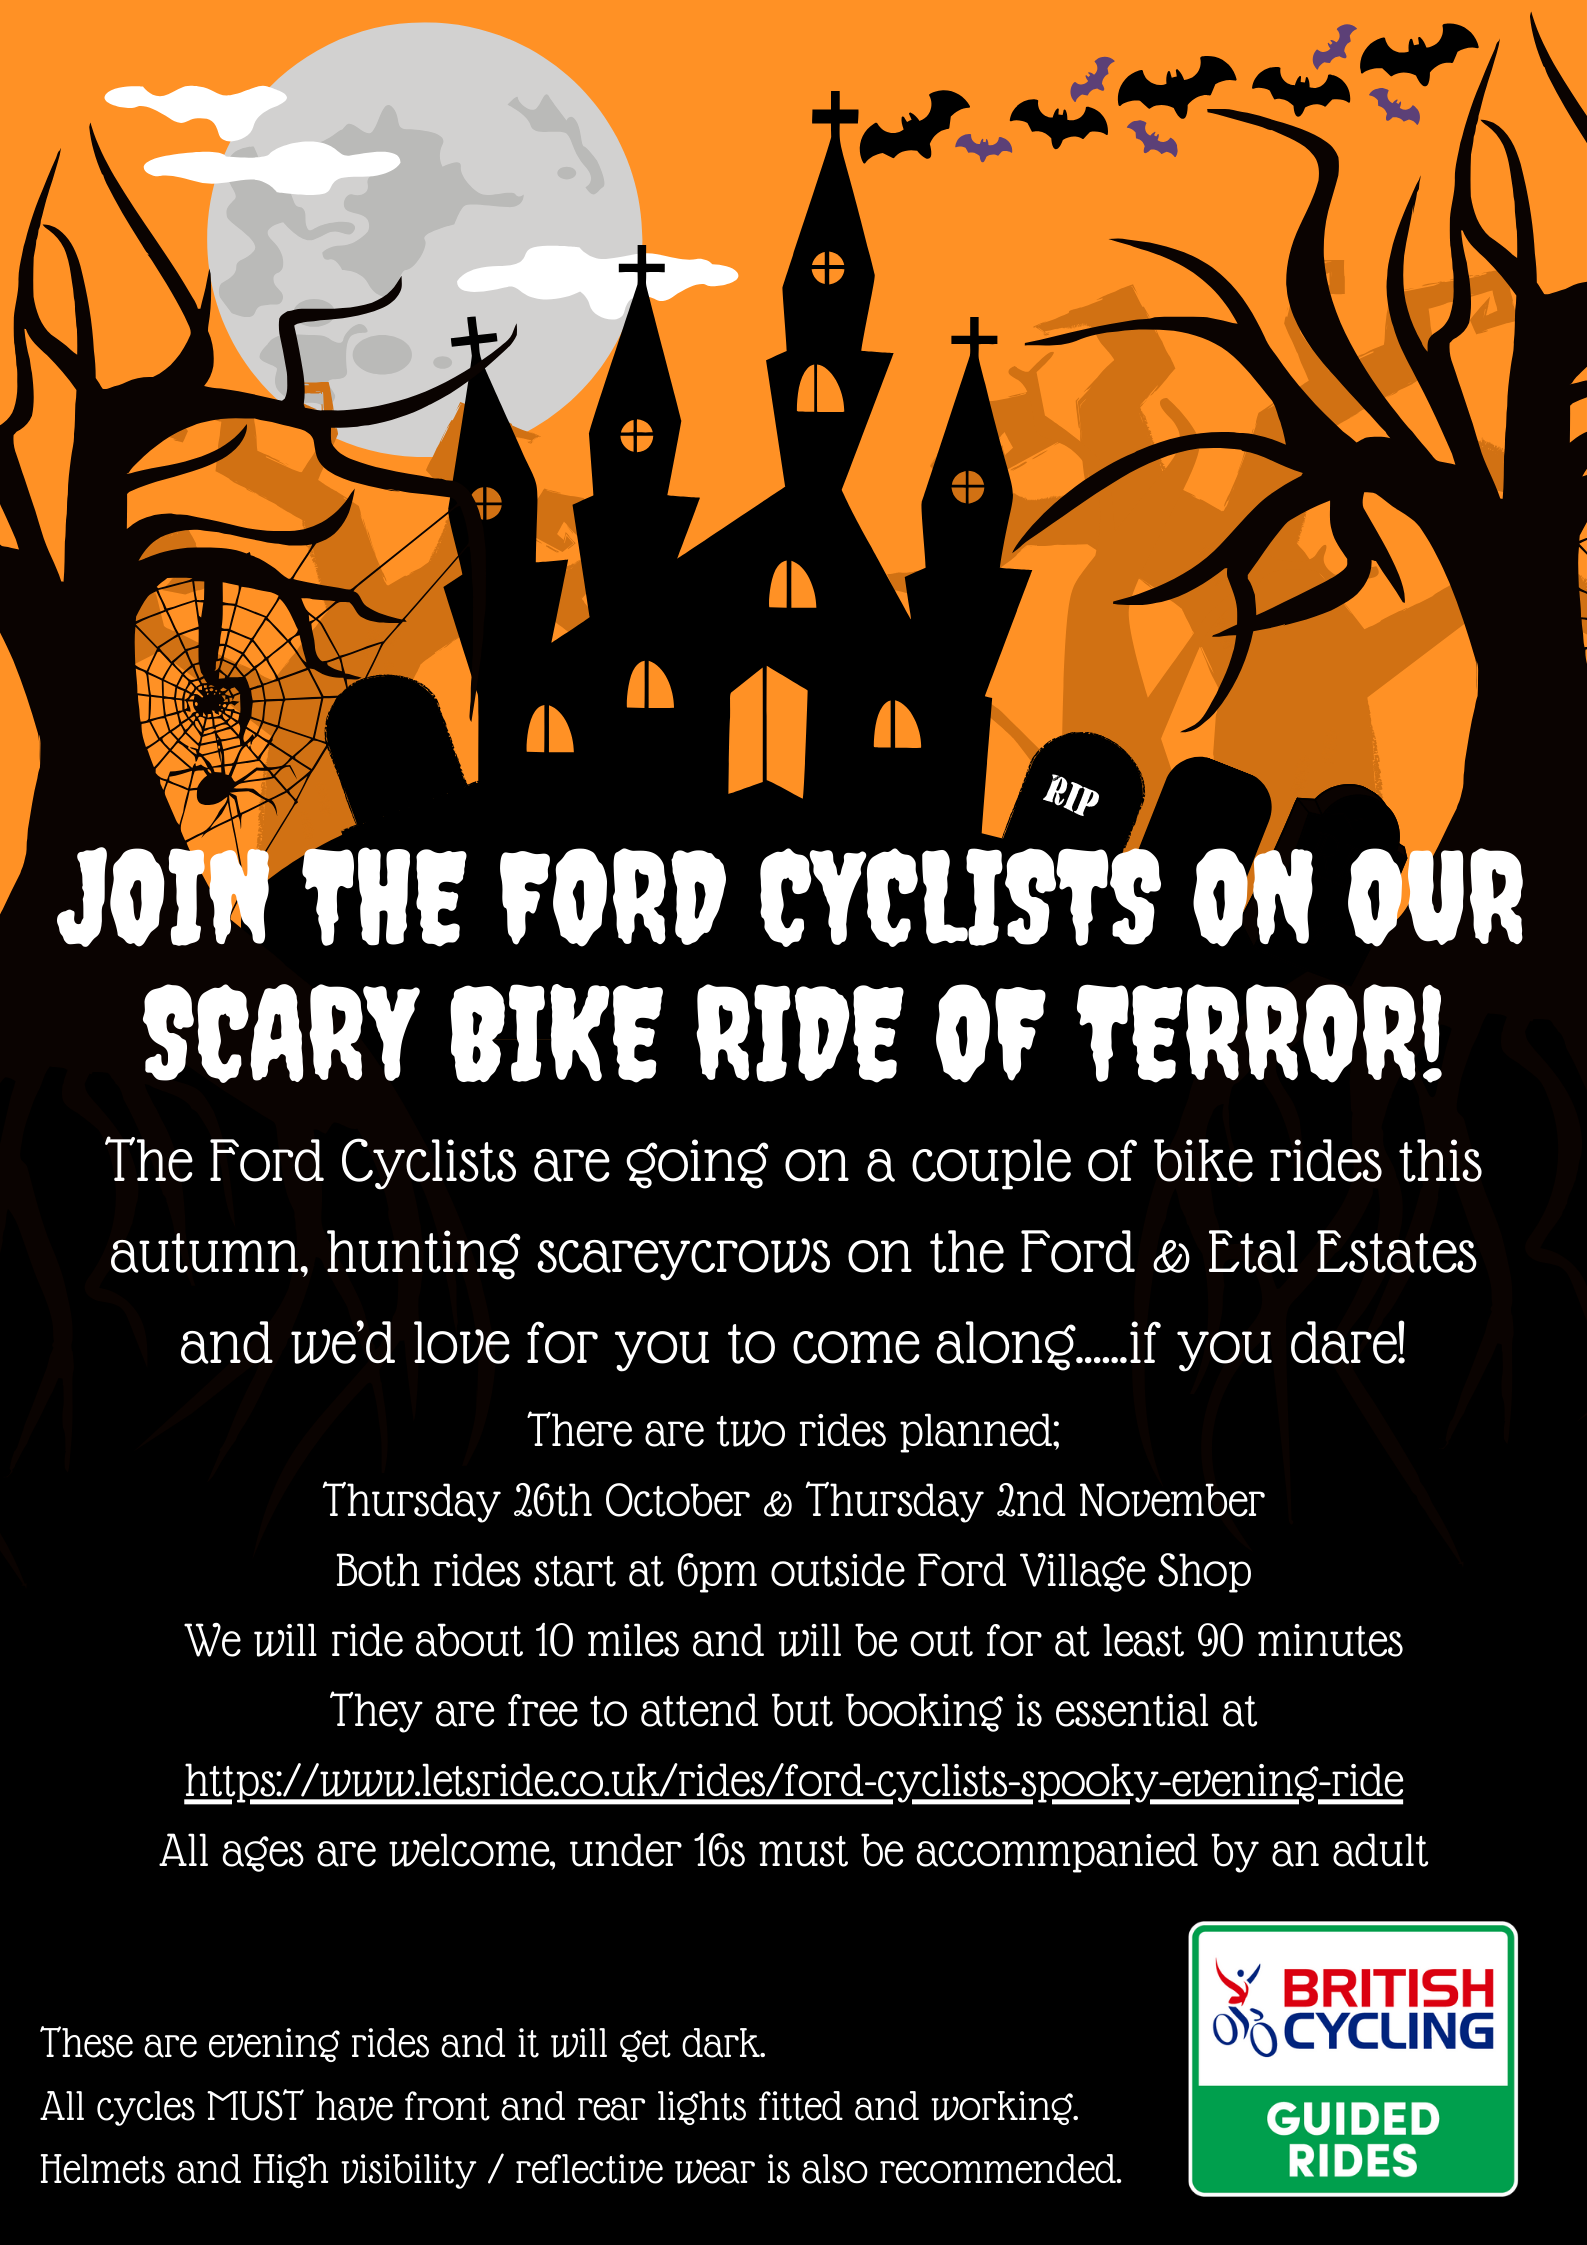 Hallowee’en Scary Bike Ride